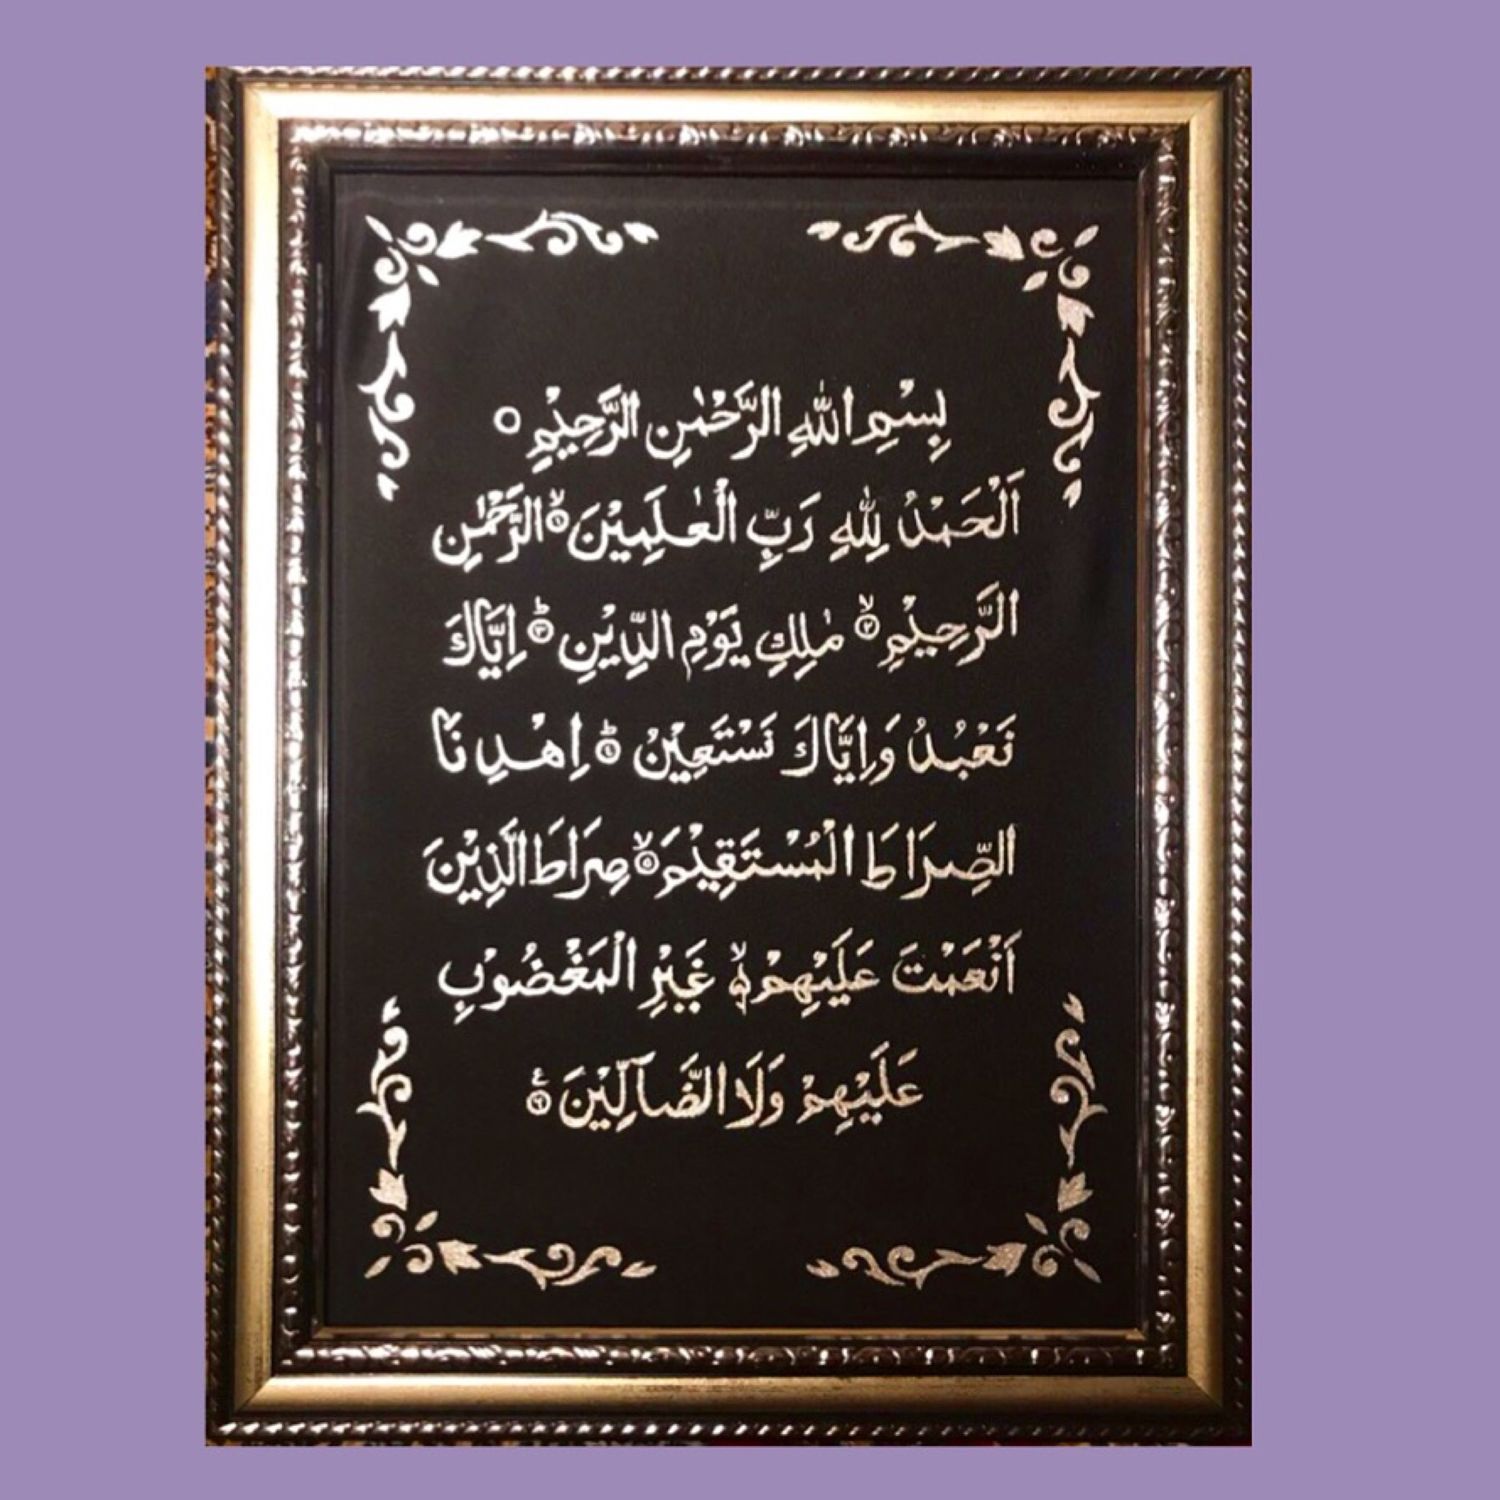 Произношение аль фатиха. Сура Аль Фатиха. Сура Аль Фатиха каллиграфия. Первая Сура Корана. Коран Сура Аль Фатиха на арабском.